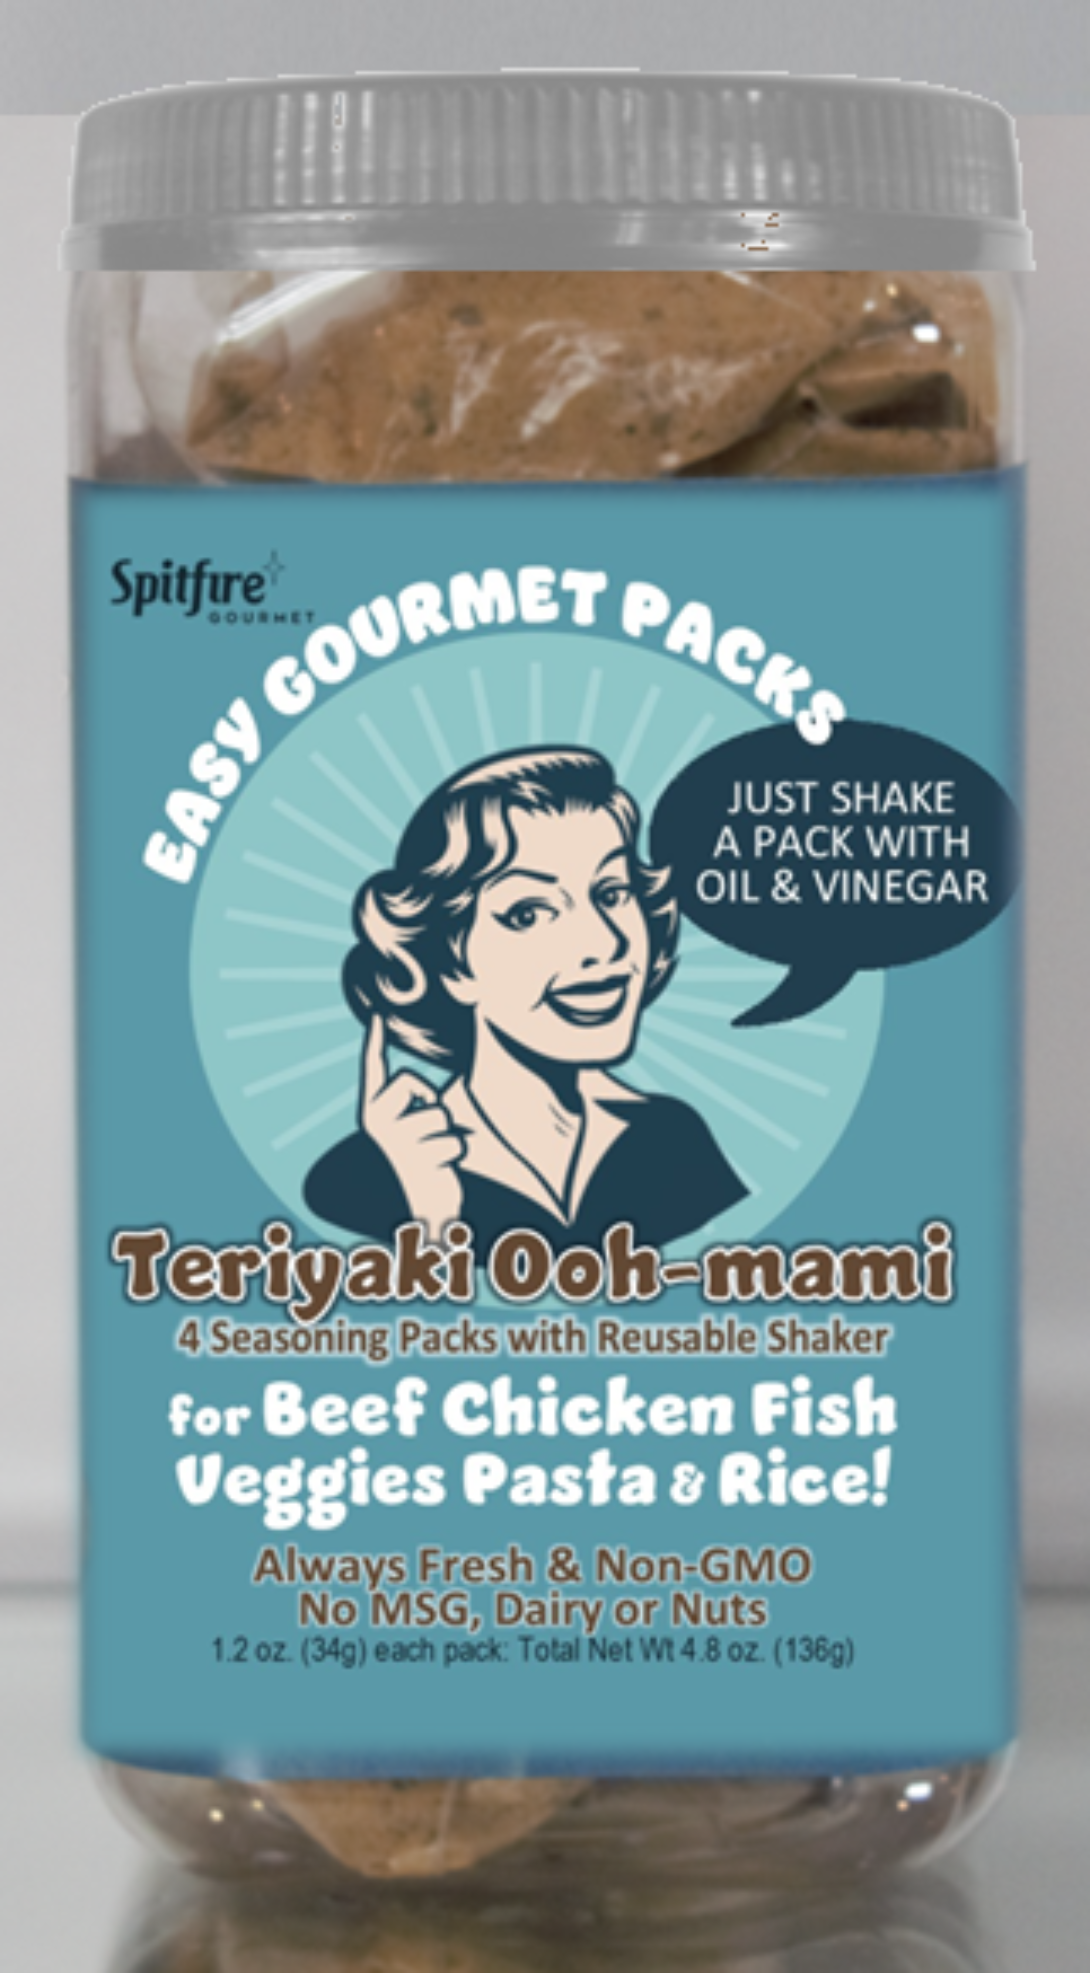 TERIYAKI OOH-MAMI Recipe Packs